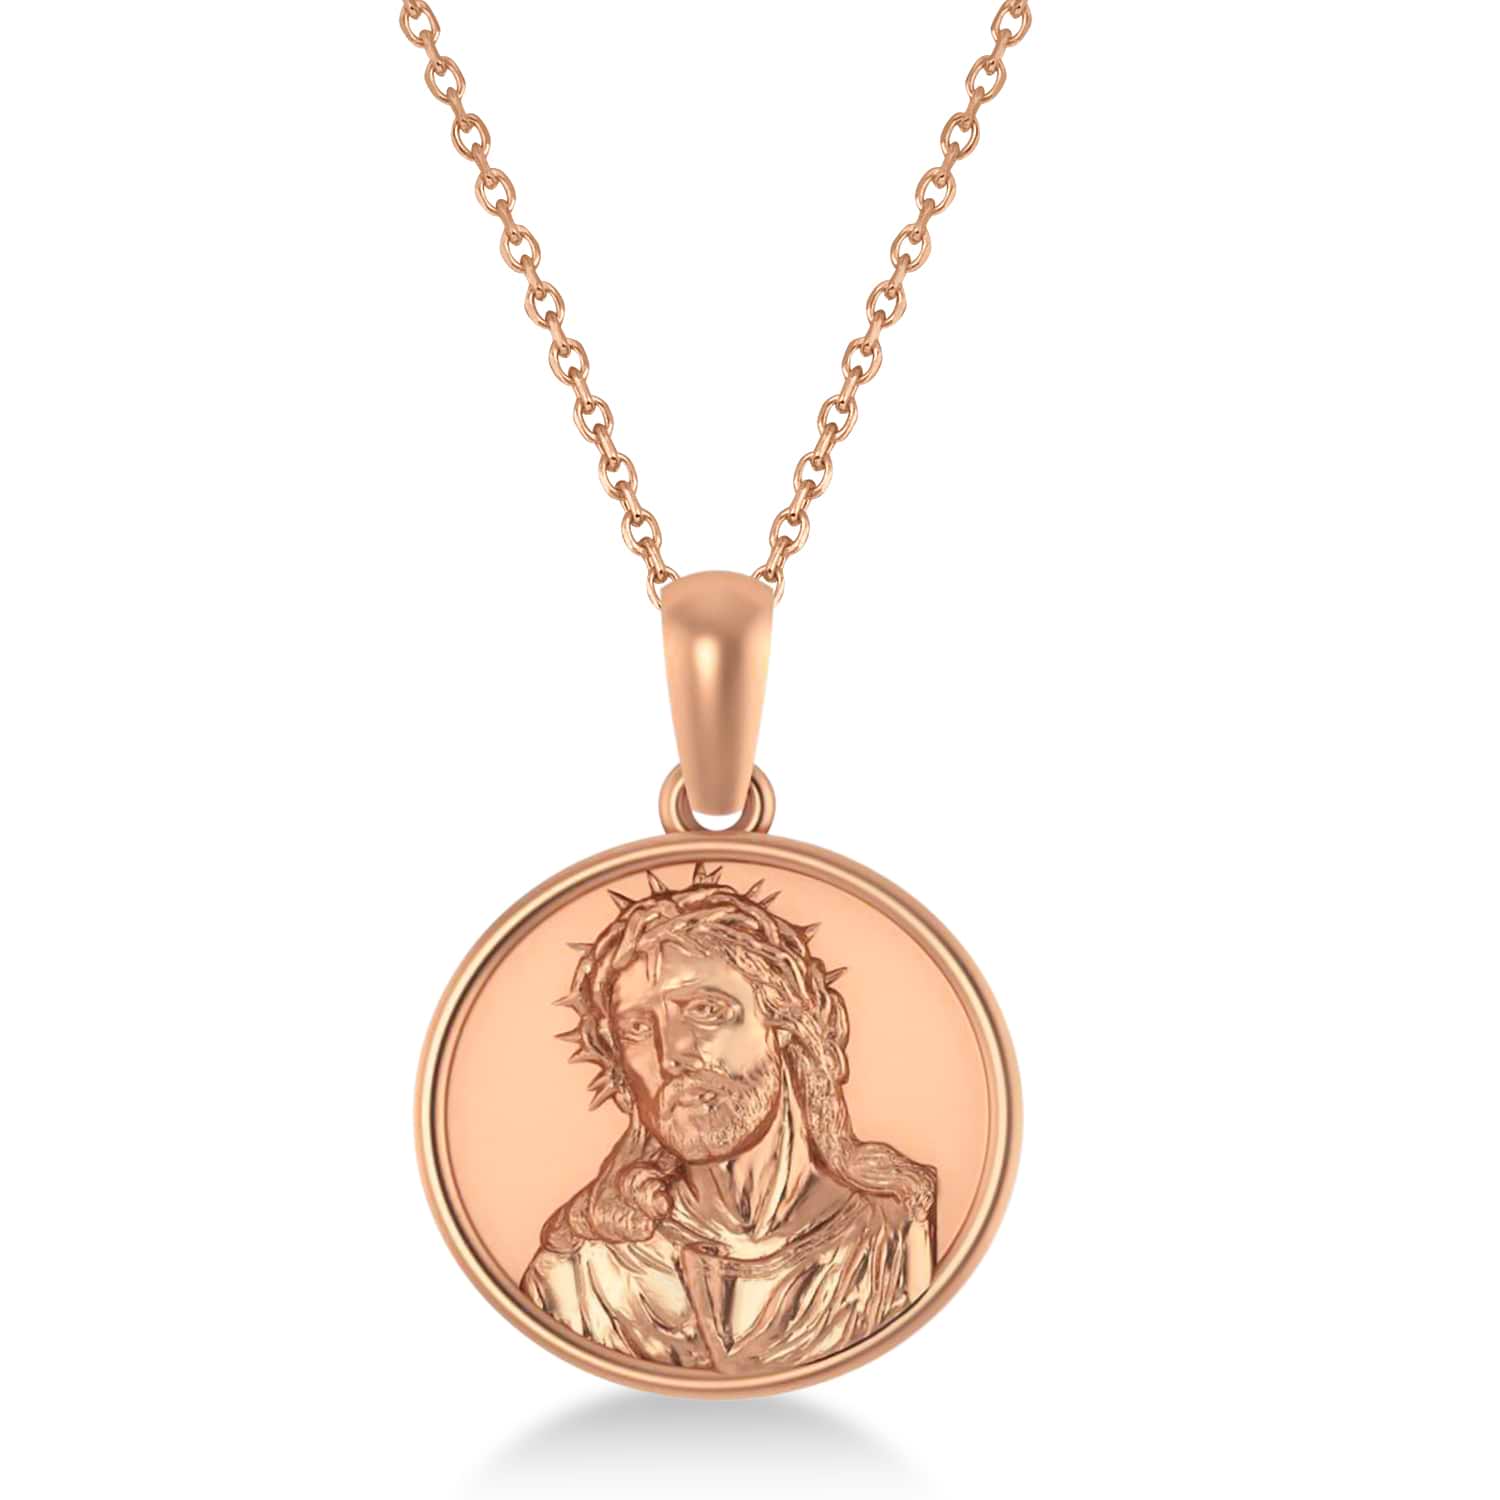 Jesus Christ Medal Pendant Necklace 14k Rose Gold